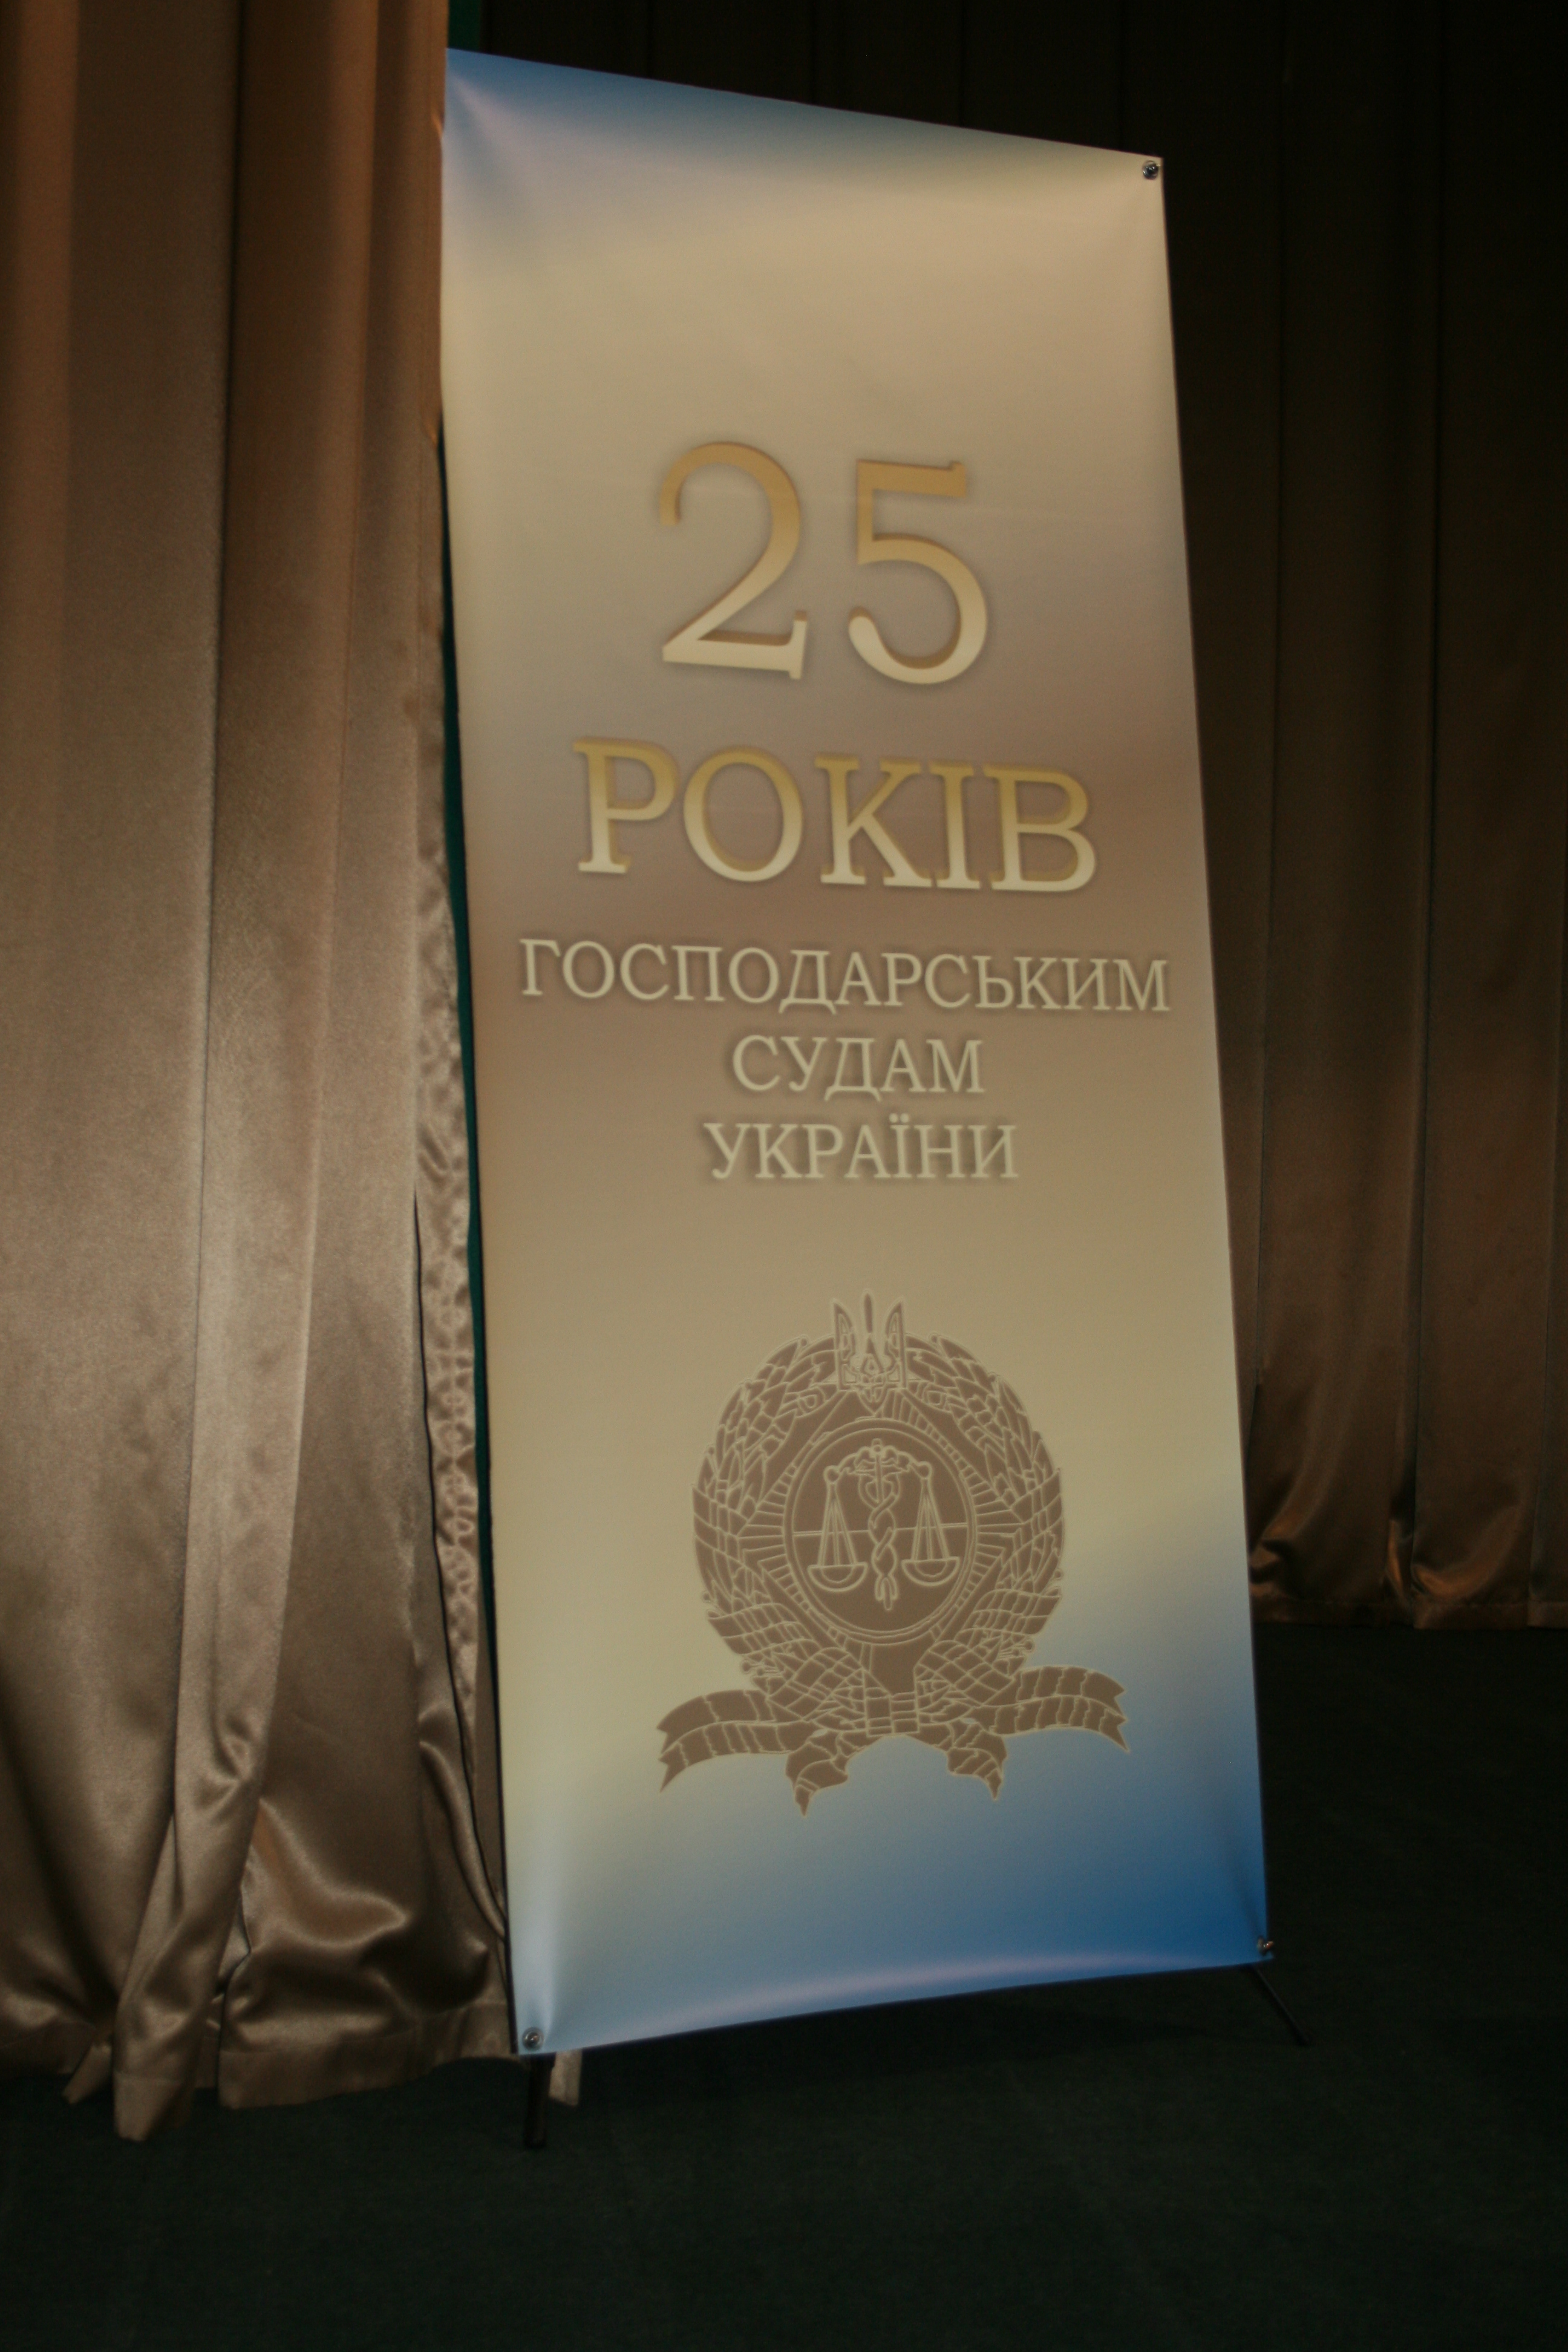 25 річниця утворення господарських судів в Україні